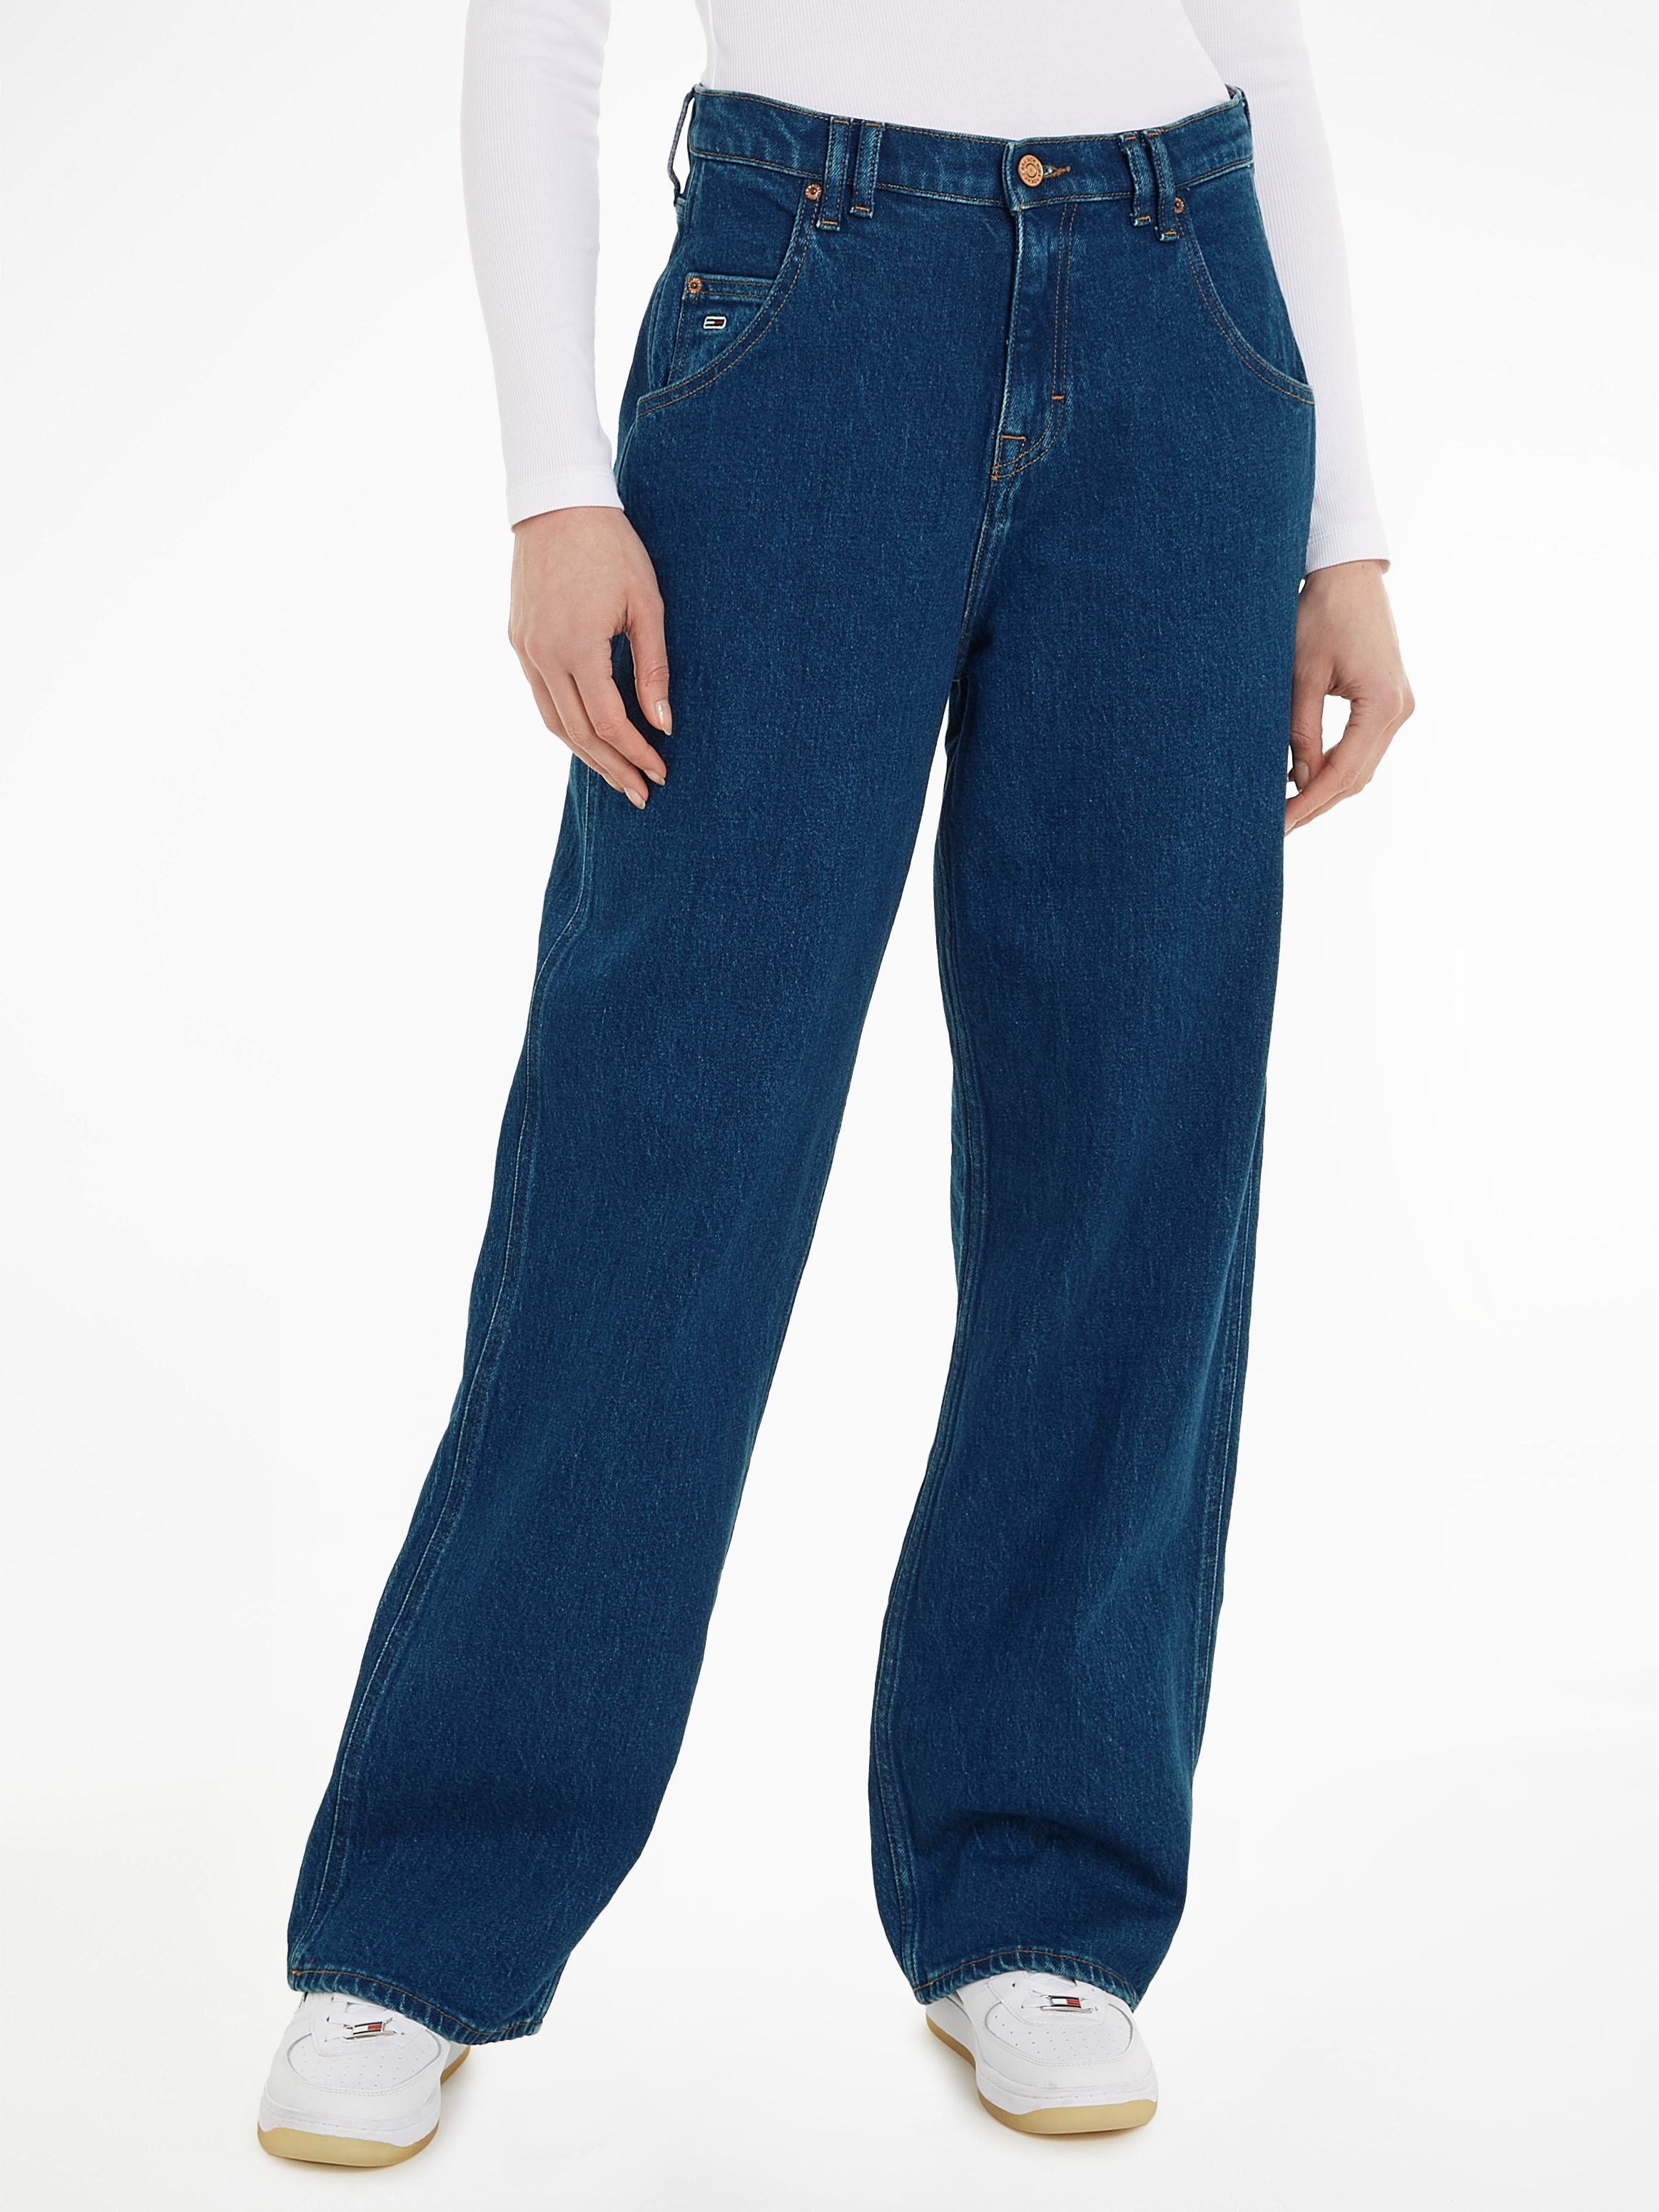 OTTO Destroyed leichten online »DAISY bestellen Jeans mit BH6110«, bei Tommy BGY Effekten Jeans LW JEAN Weite